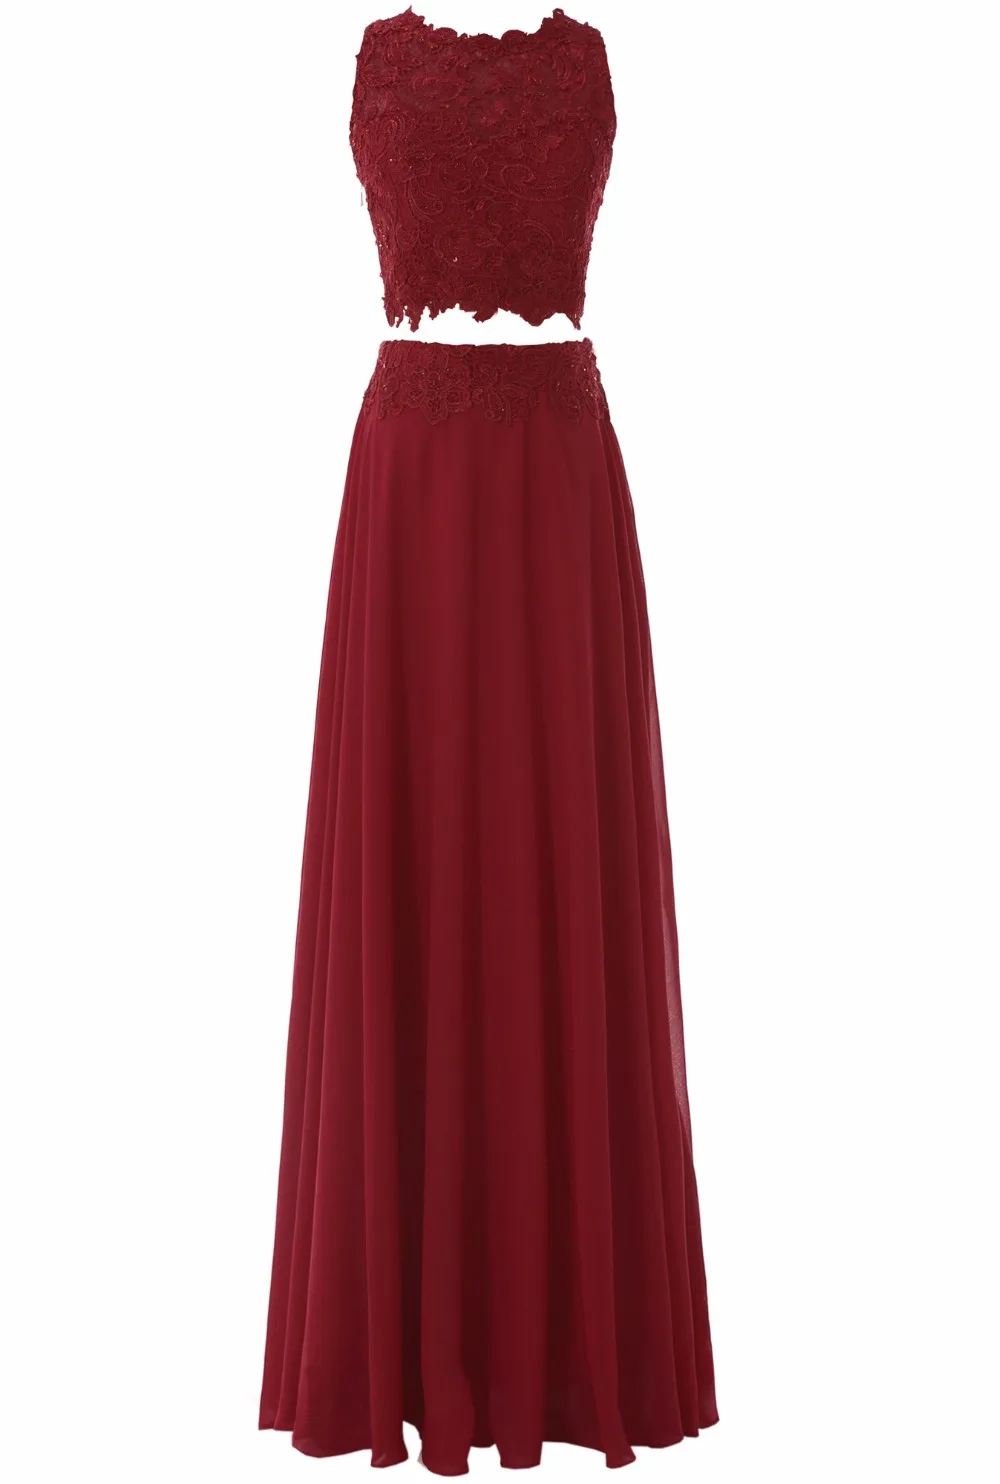 ТРАПЕЦИЕВИДНОЕ шифоновое длинное платье с круглым вырезом из двух частей для выпускного вечера Красные кружевные аппликации для вечернего платья vestido de fiesta vestidos SL-P329